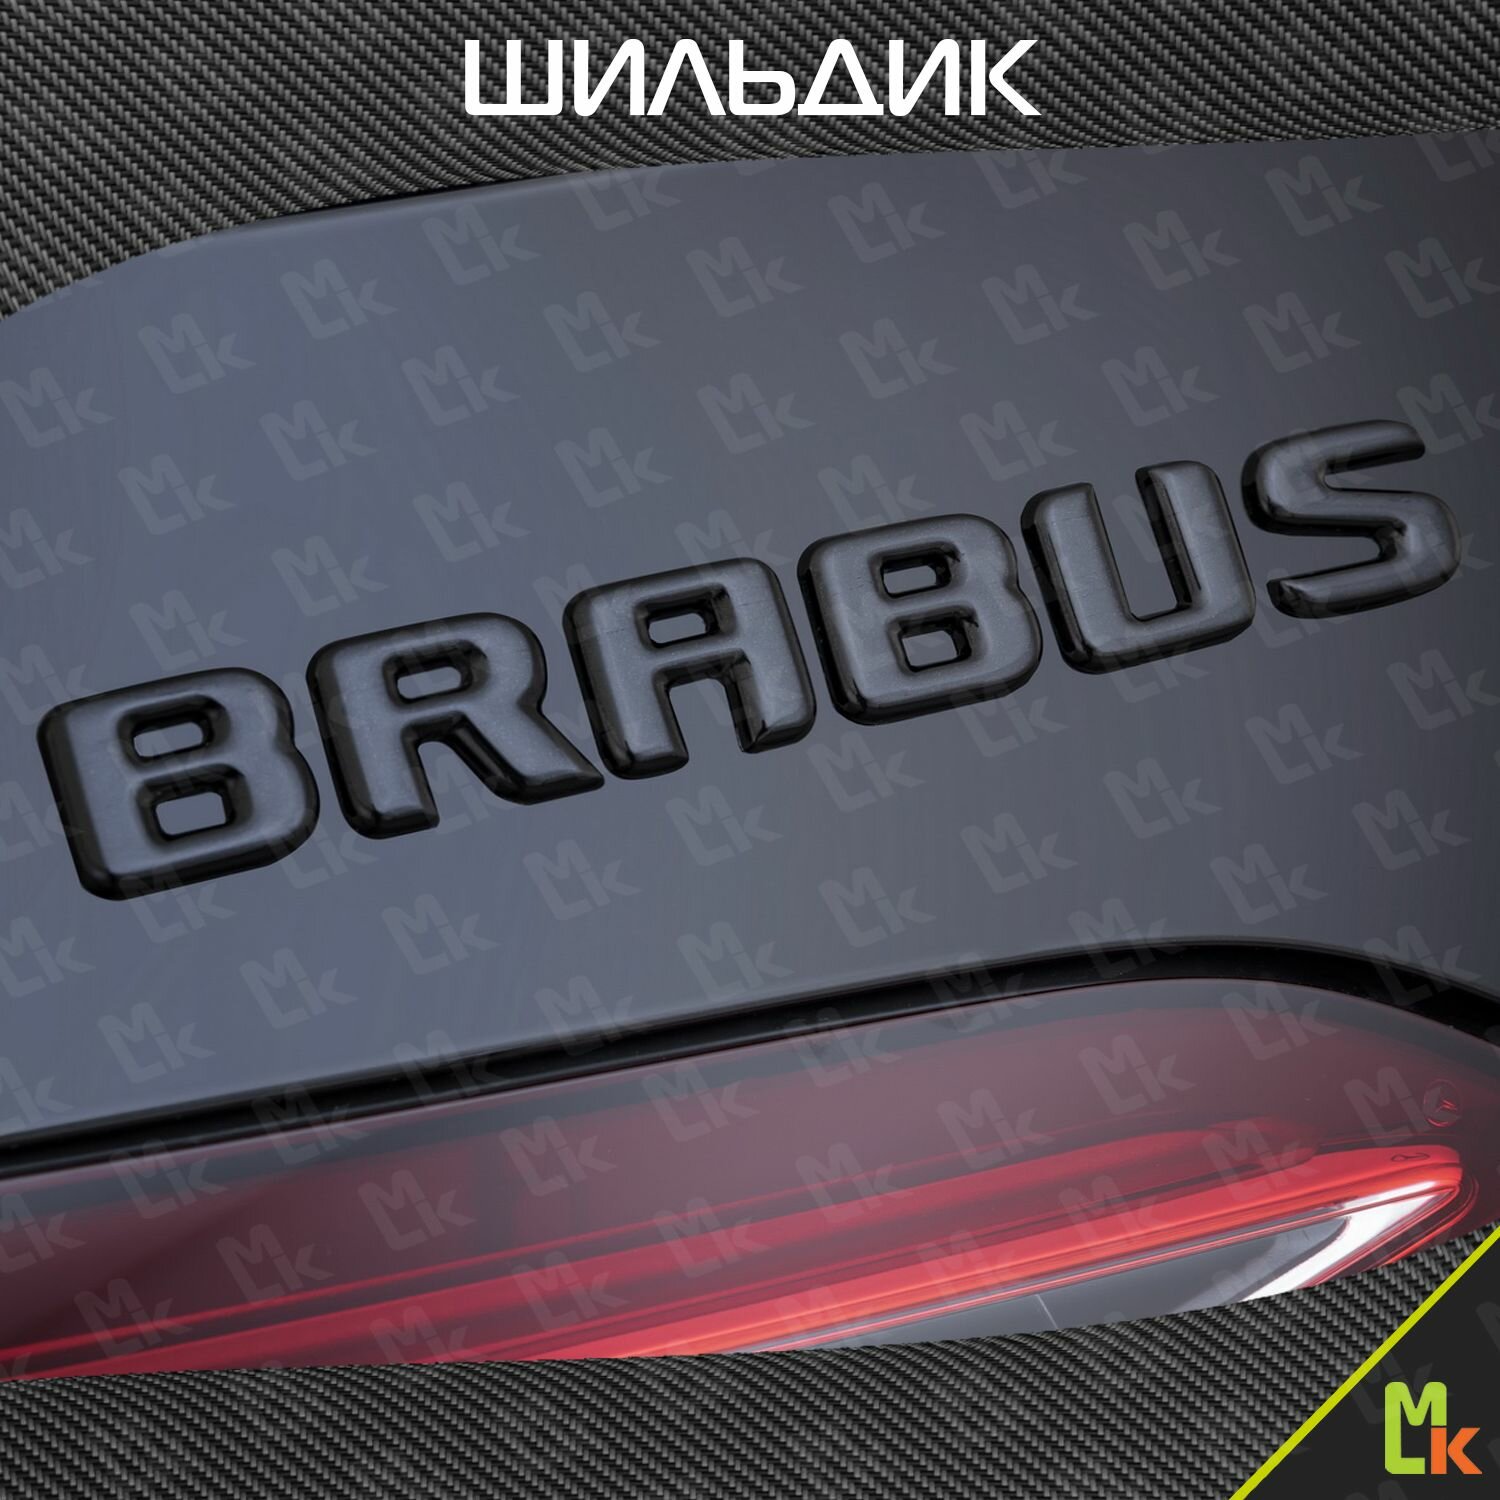 Шильдик c логотипом "Brabus" наклейка для автомобиля Mashinokom/ размер 200*25 мм